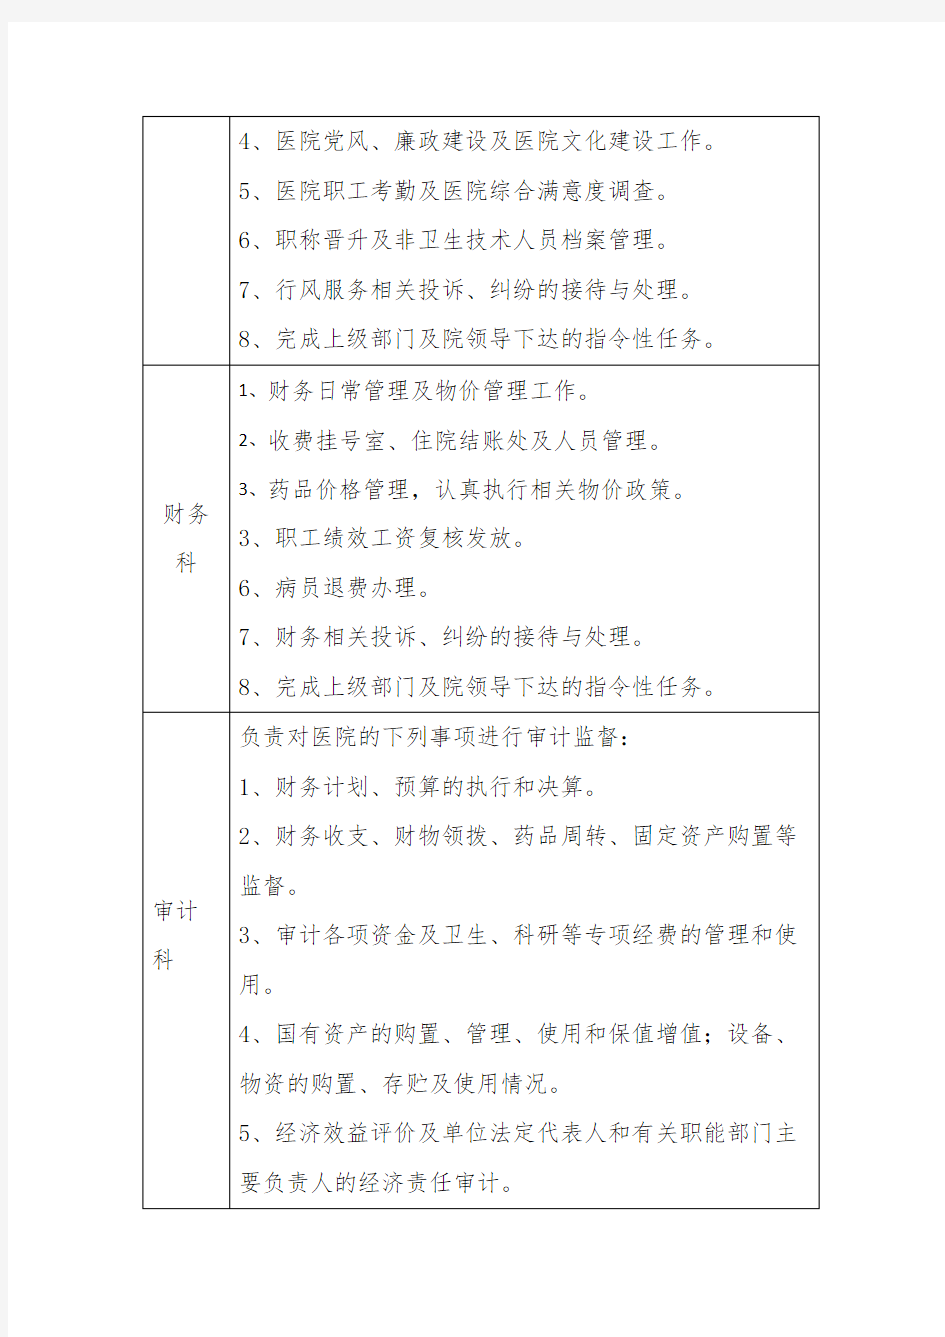 中医医院职能科室职责一览表